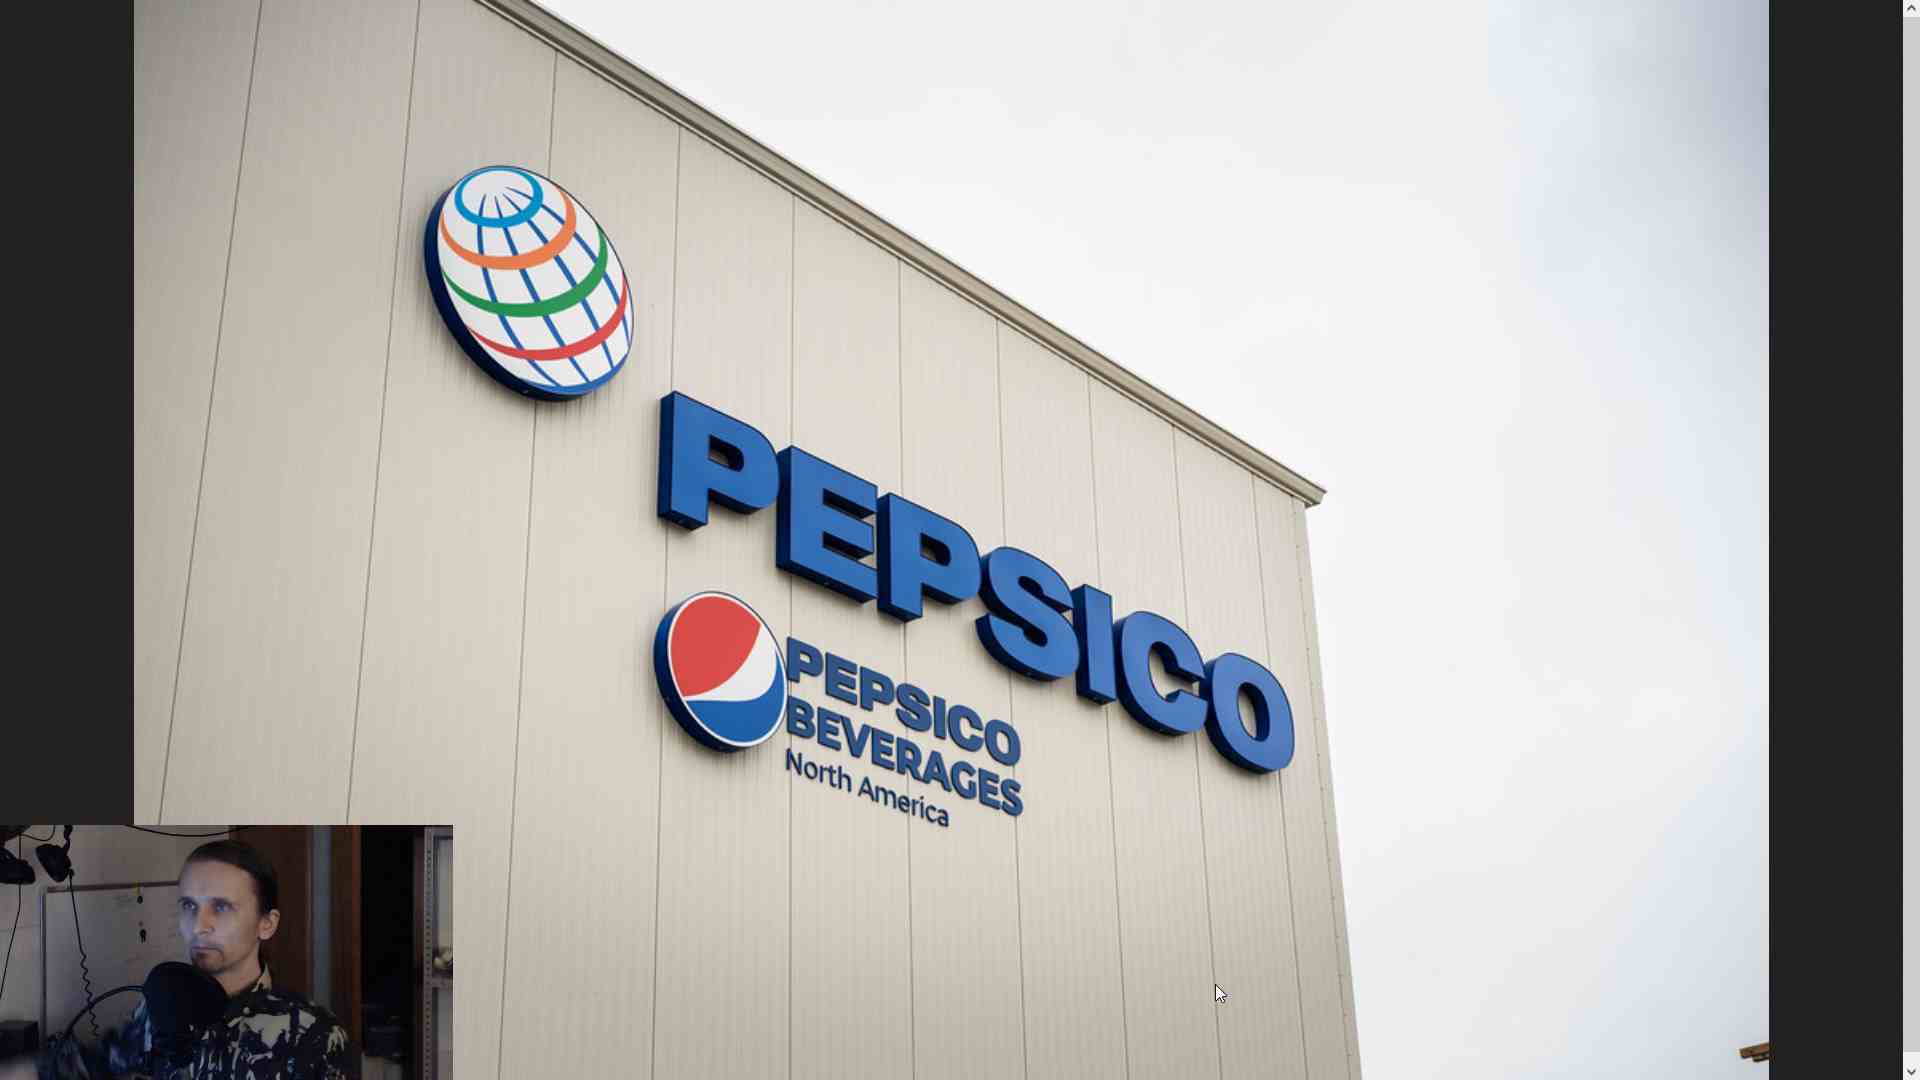 Pepsico. Повышение цен, объёмы производства и снижение веса товара в упаковке за прошедшие два года